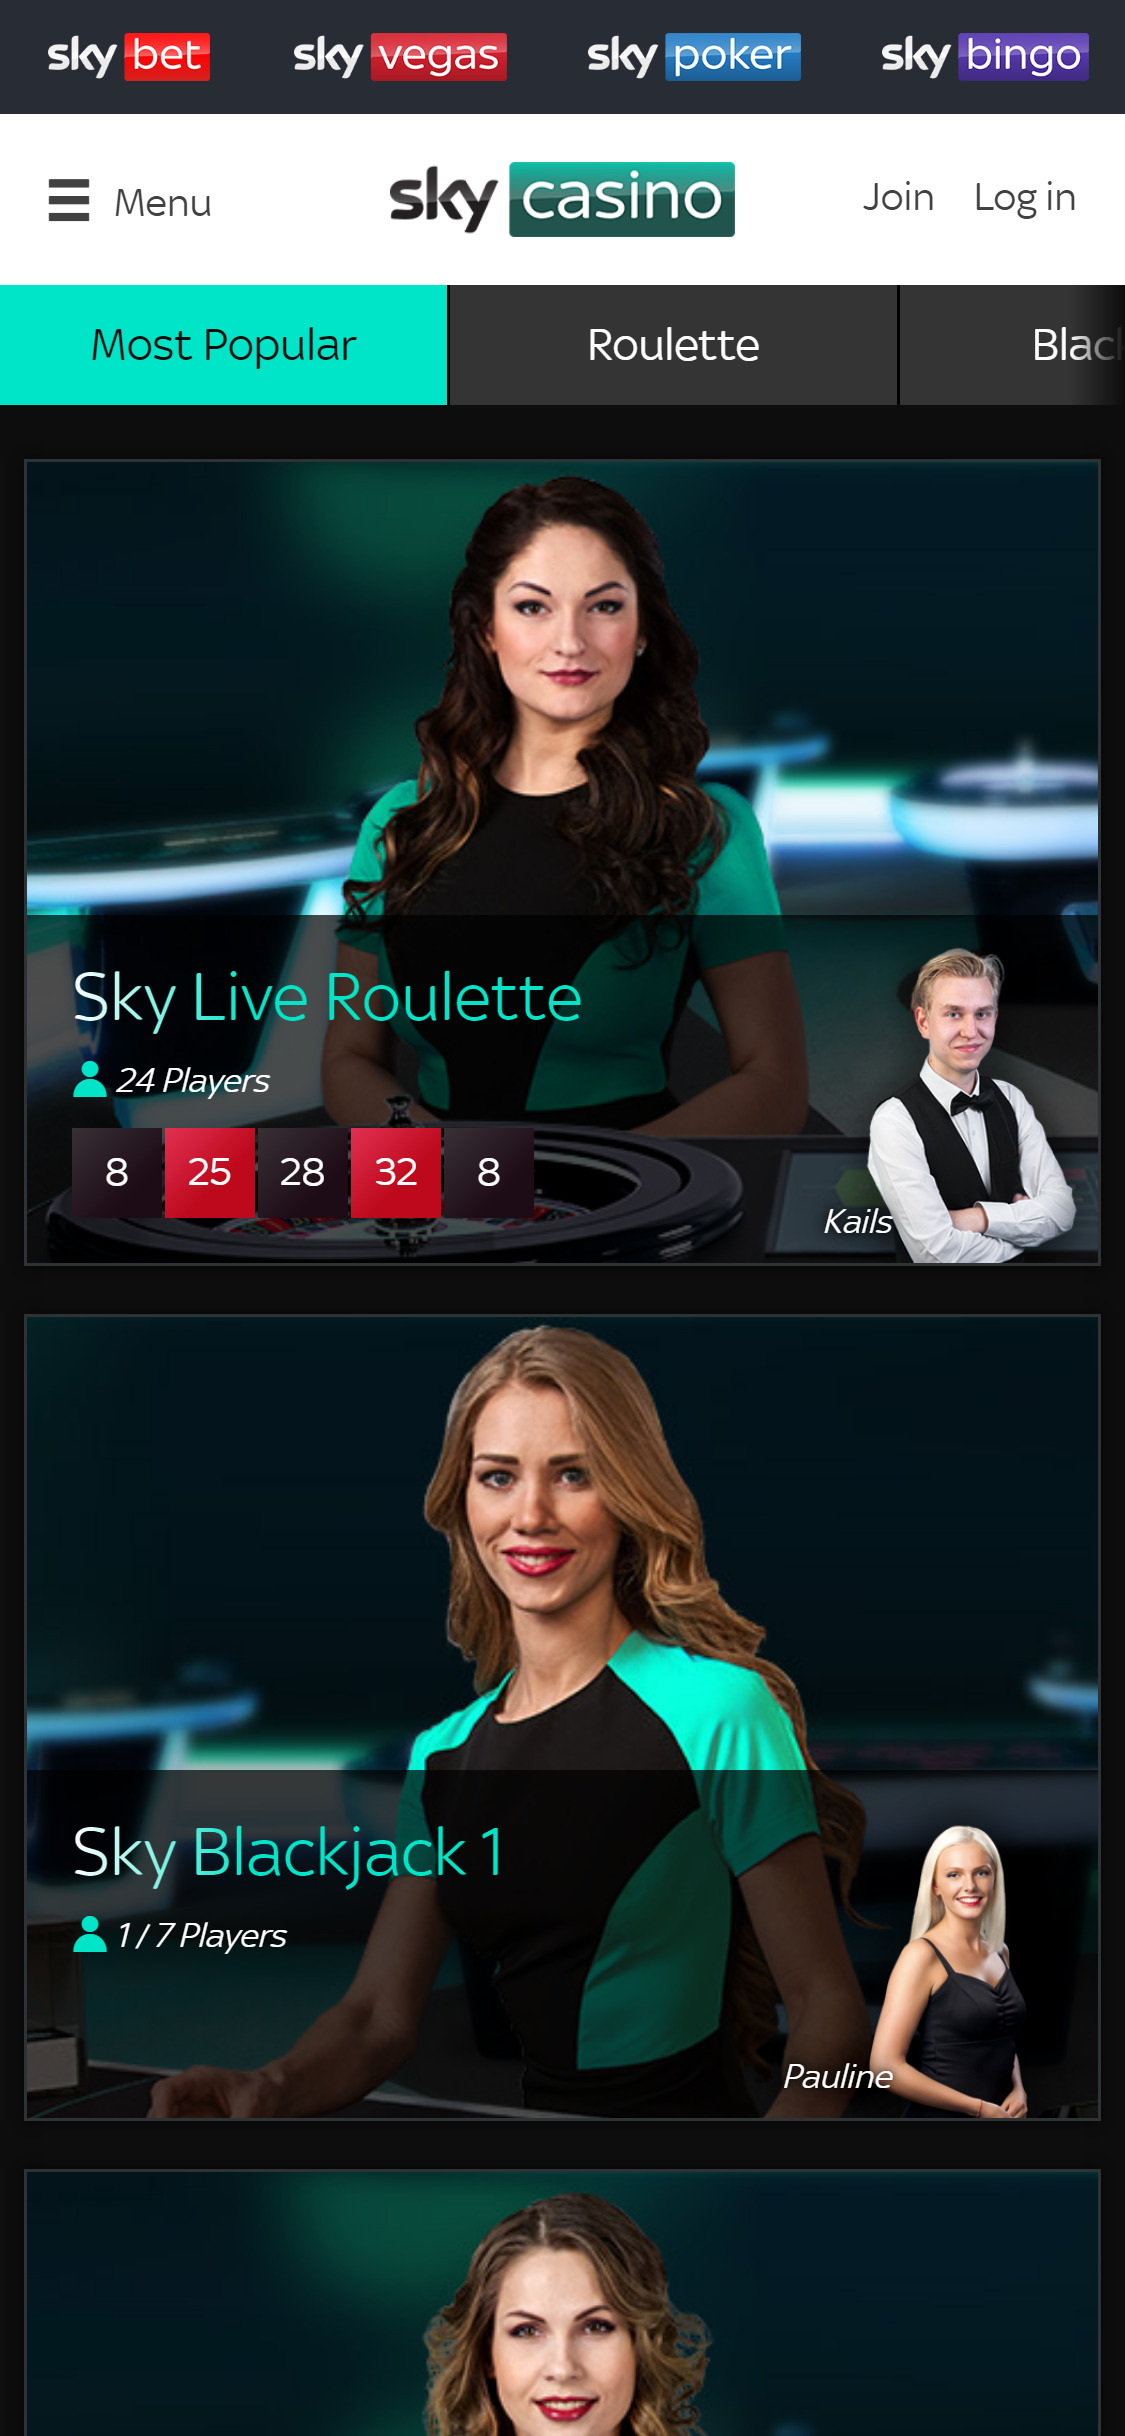 Sky Casino Mobile Live Dealer Games Review